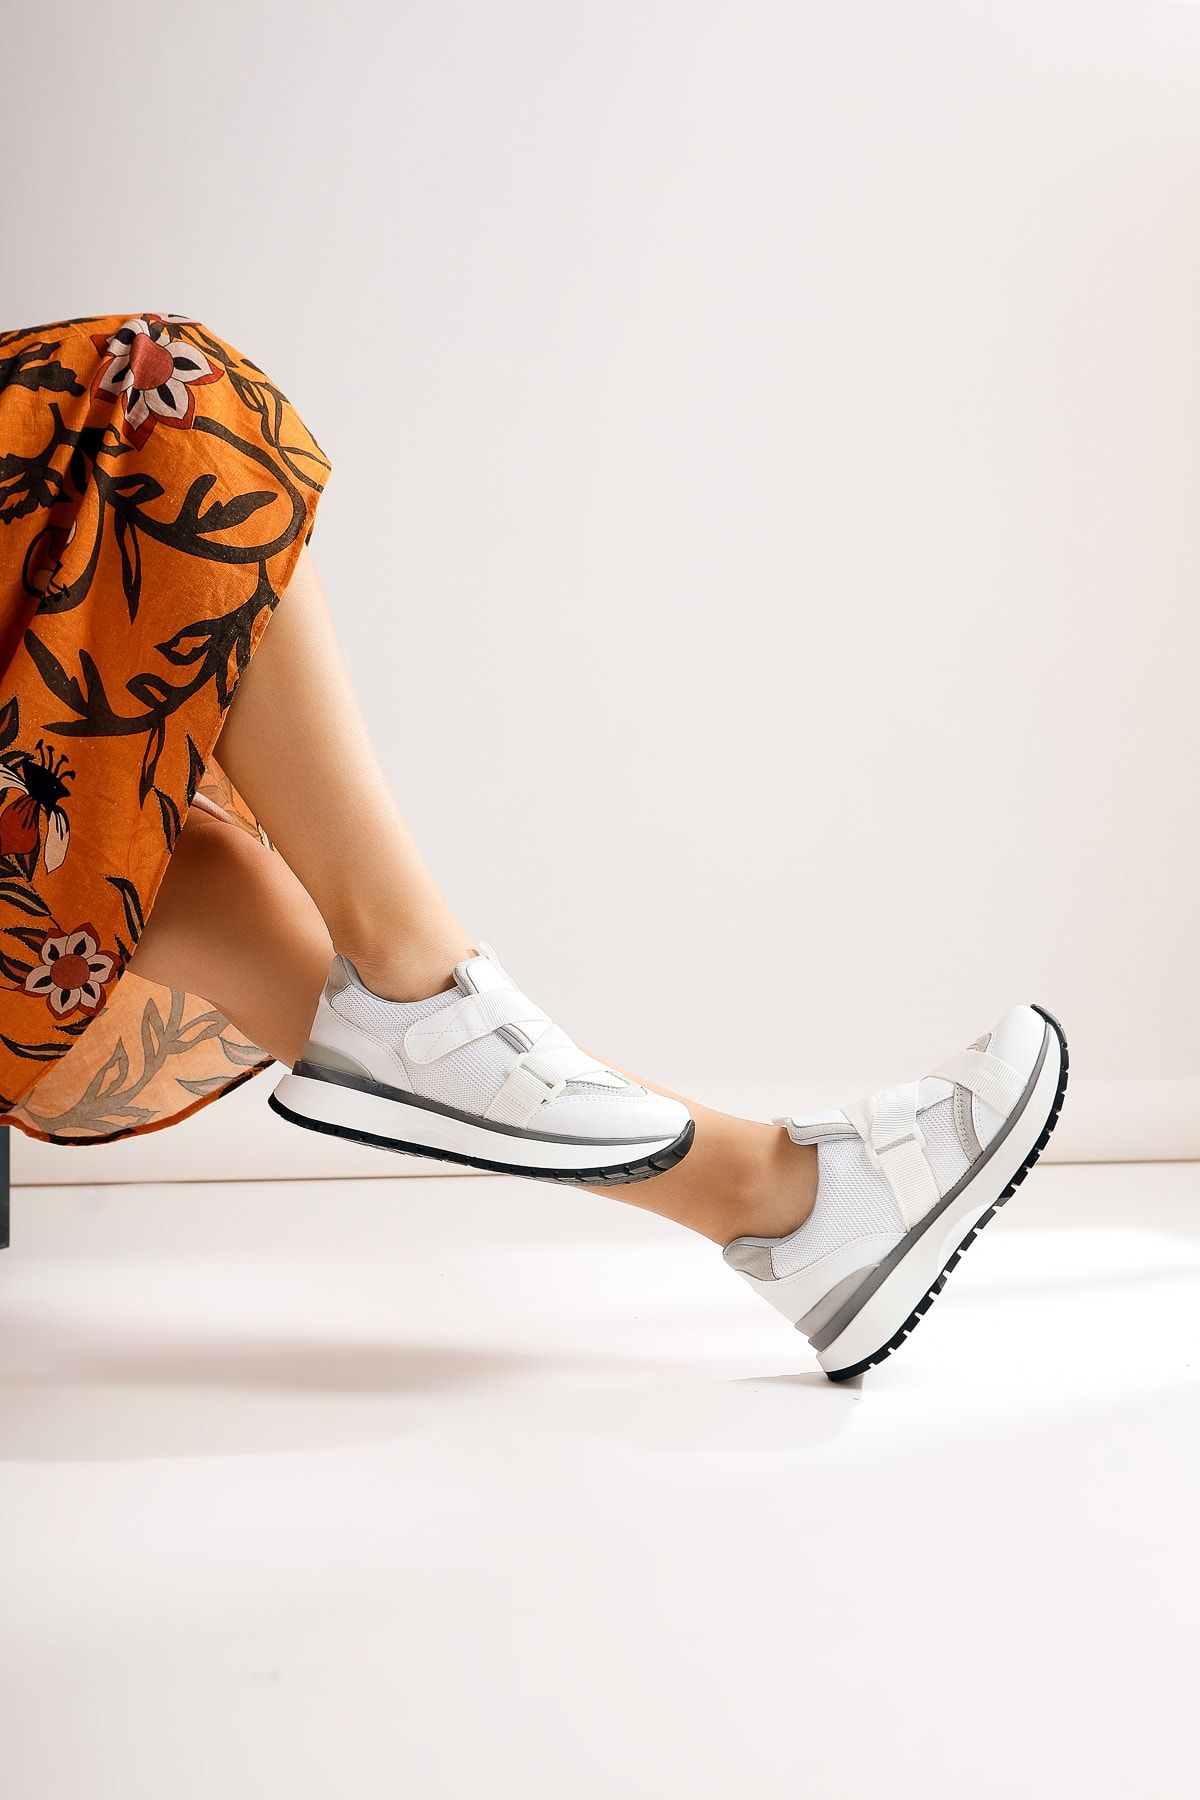 Limoya Anima Beyaz Cırt Detaylı Sneakers Spor Ayakkabı